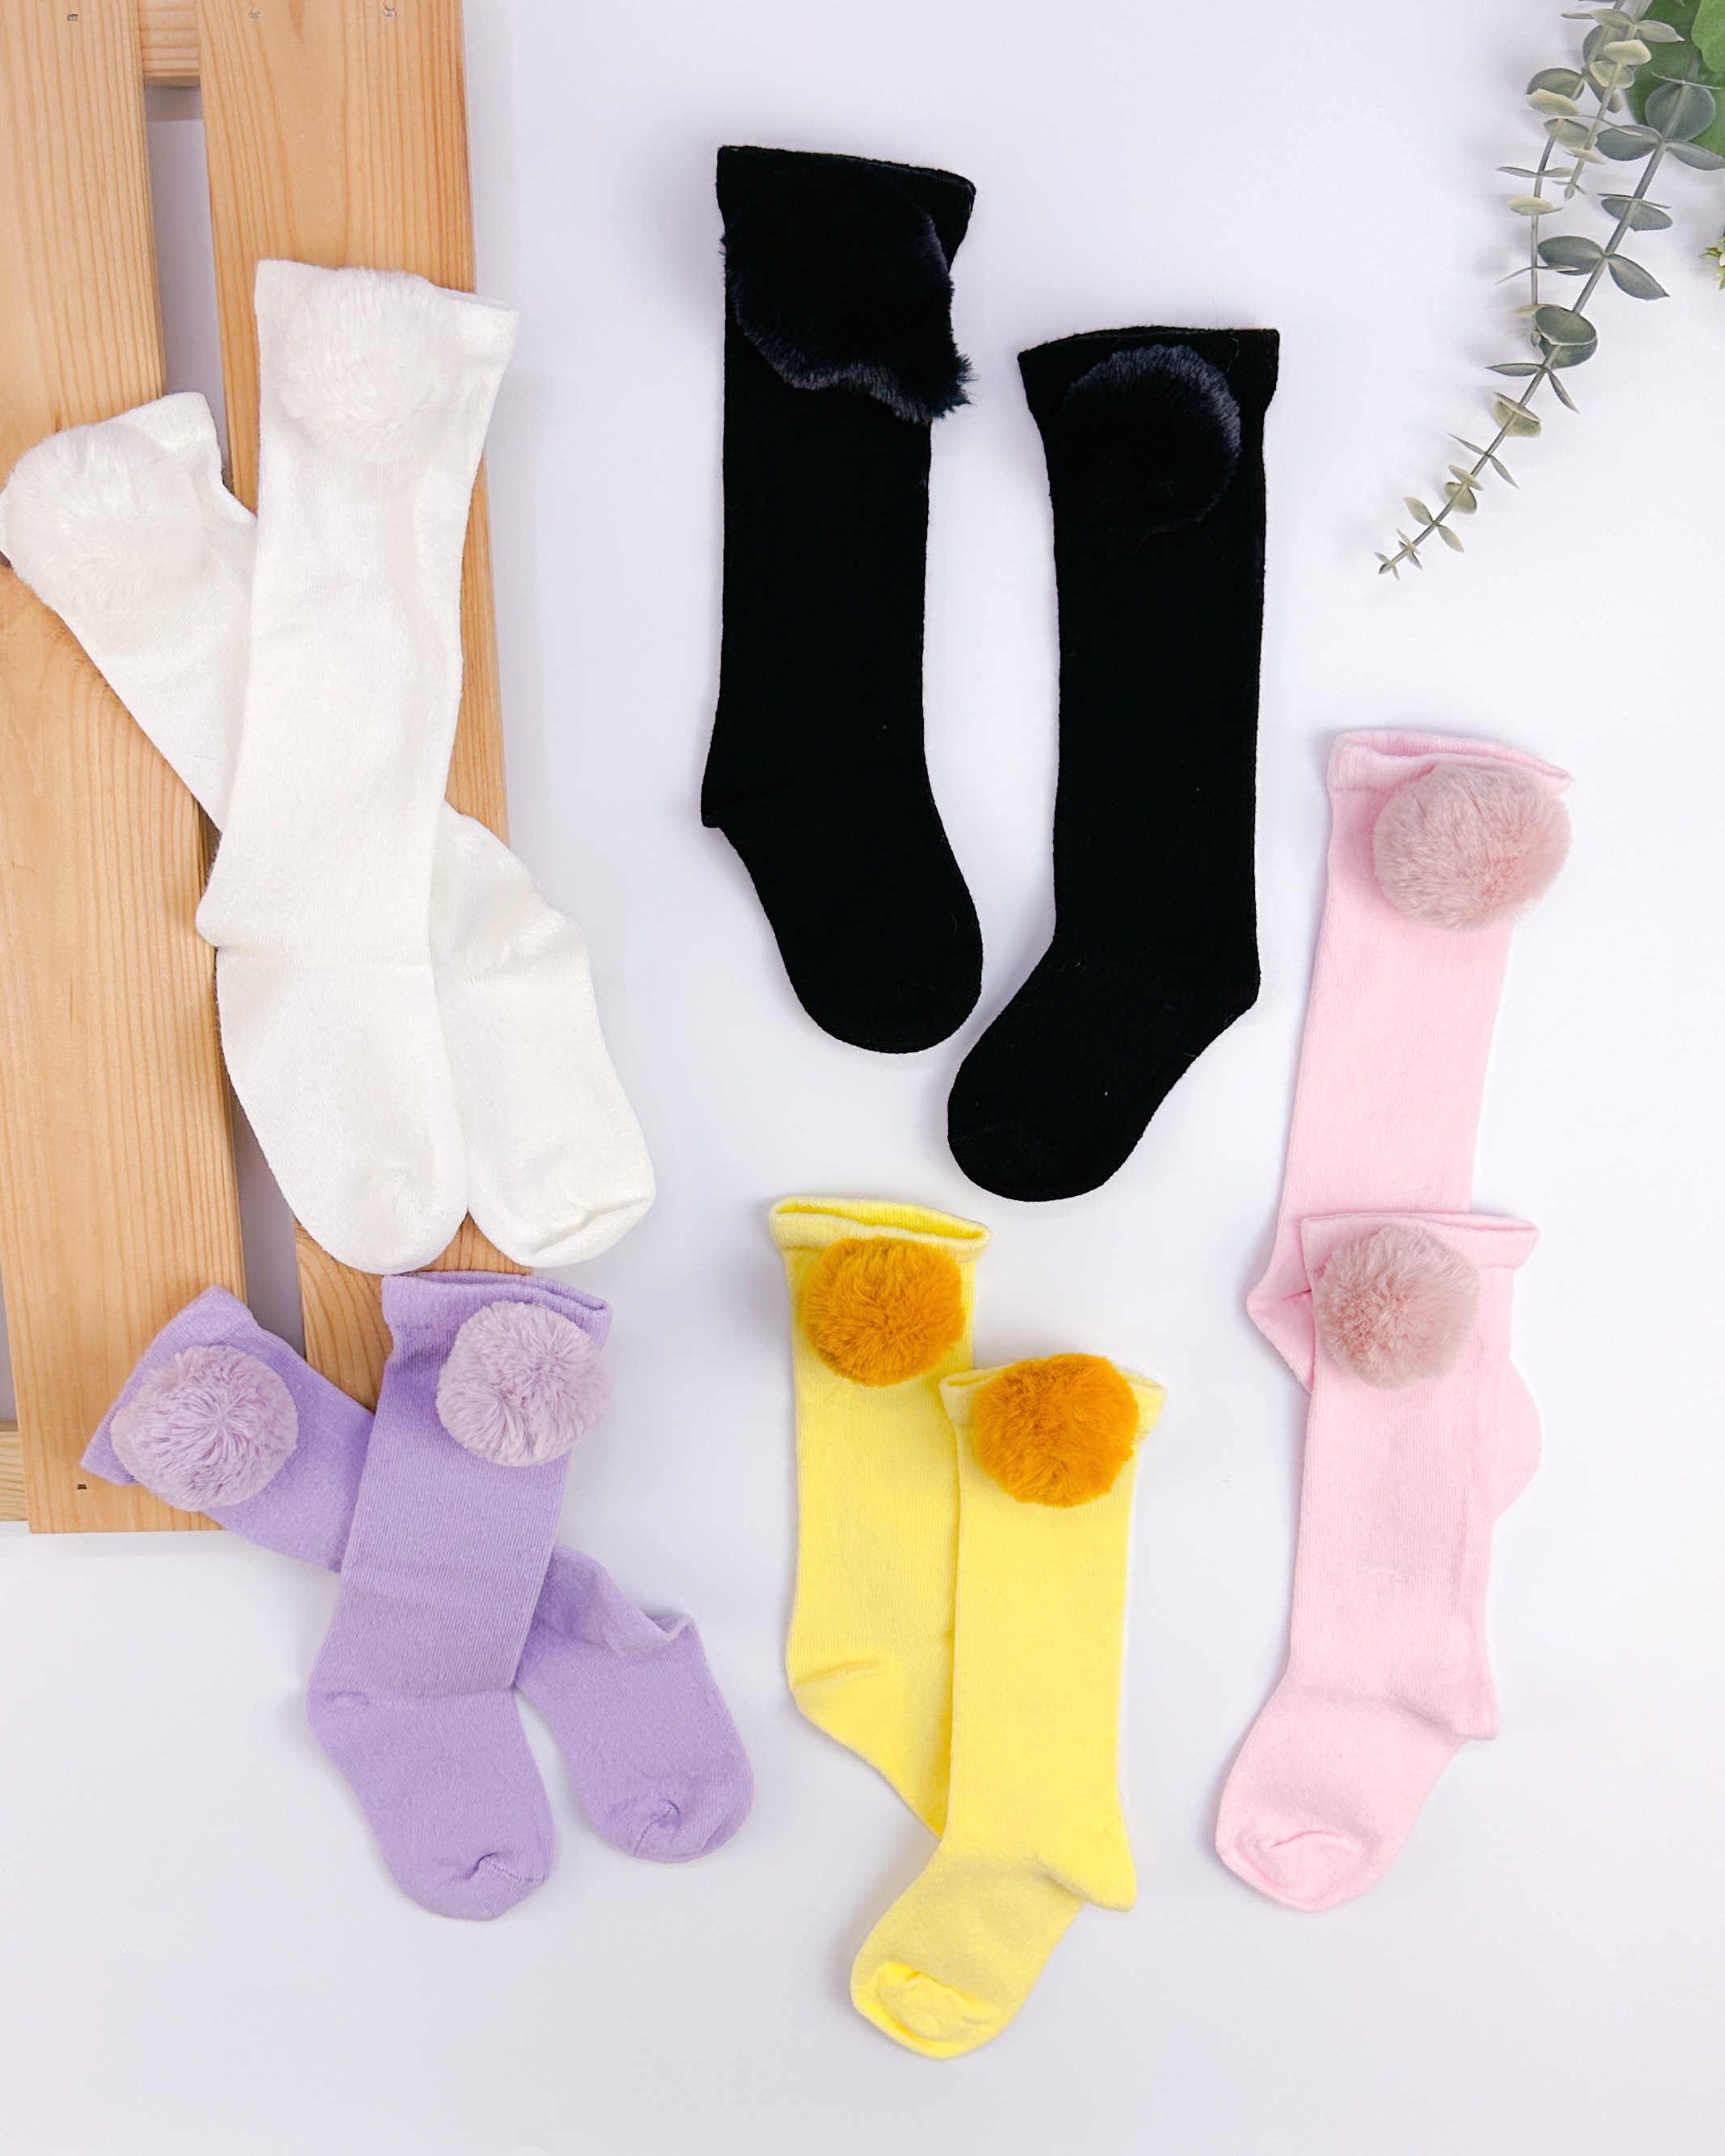 Ponponlu diz altı pamuklu bebe çorap ( 1 yaştan 2 yaşa kadar uyumludur)